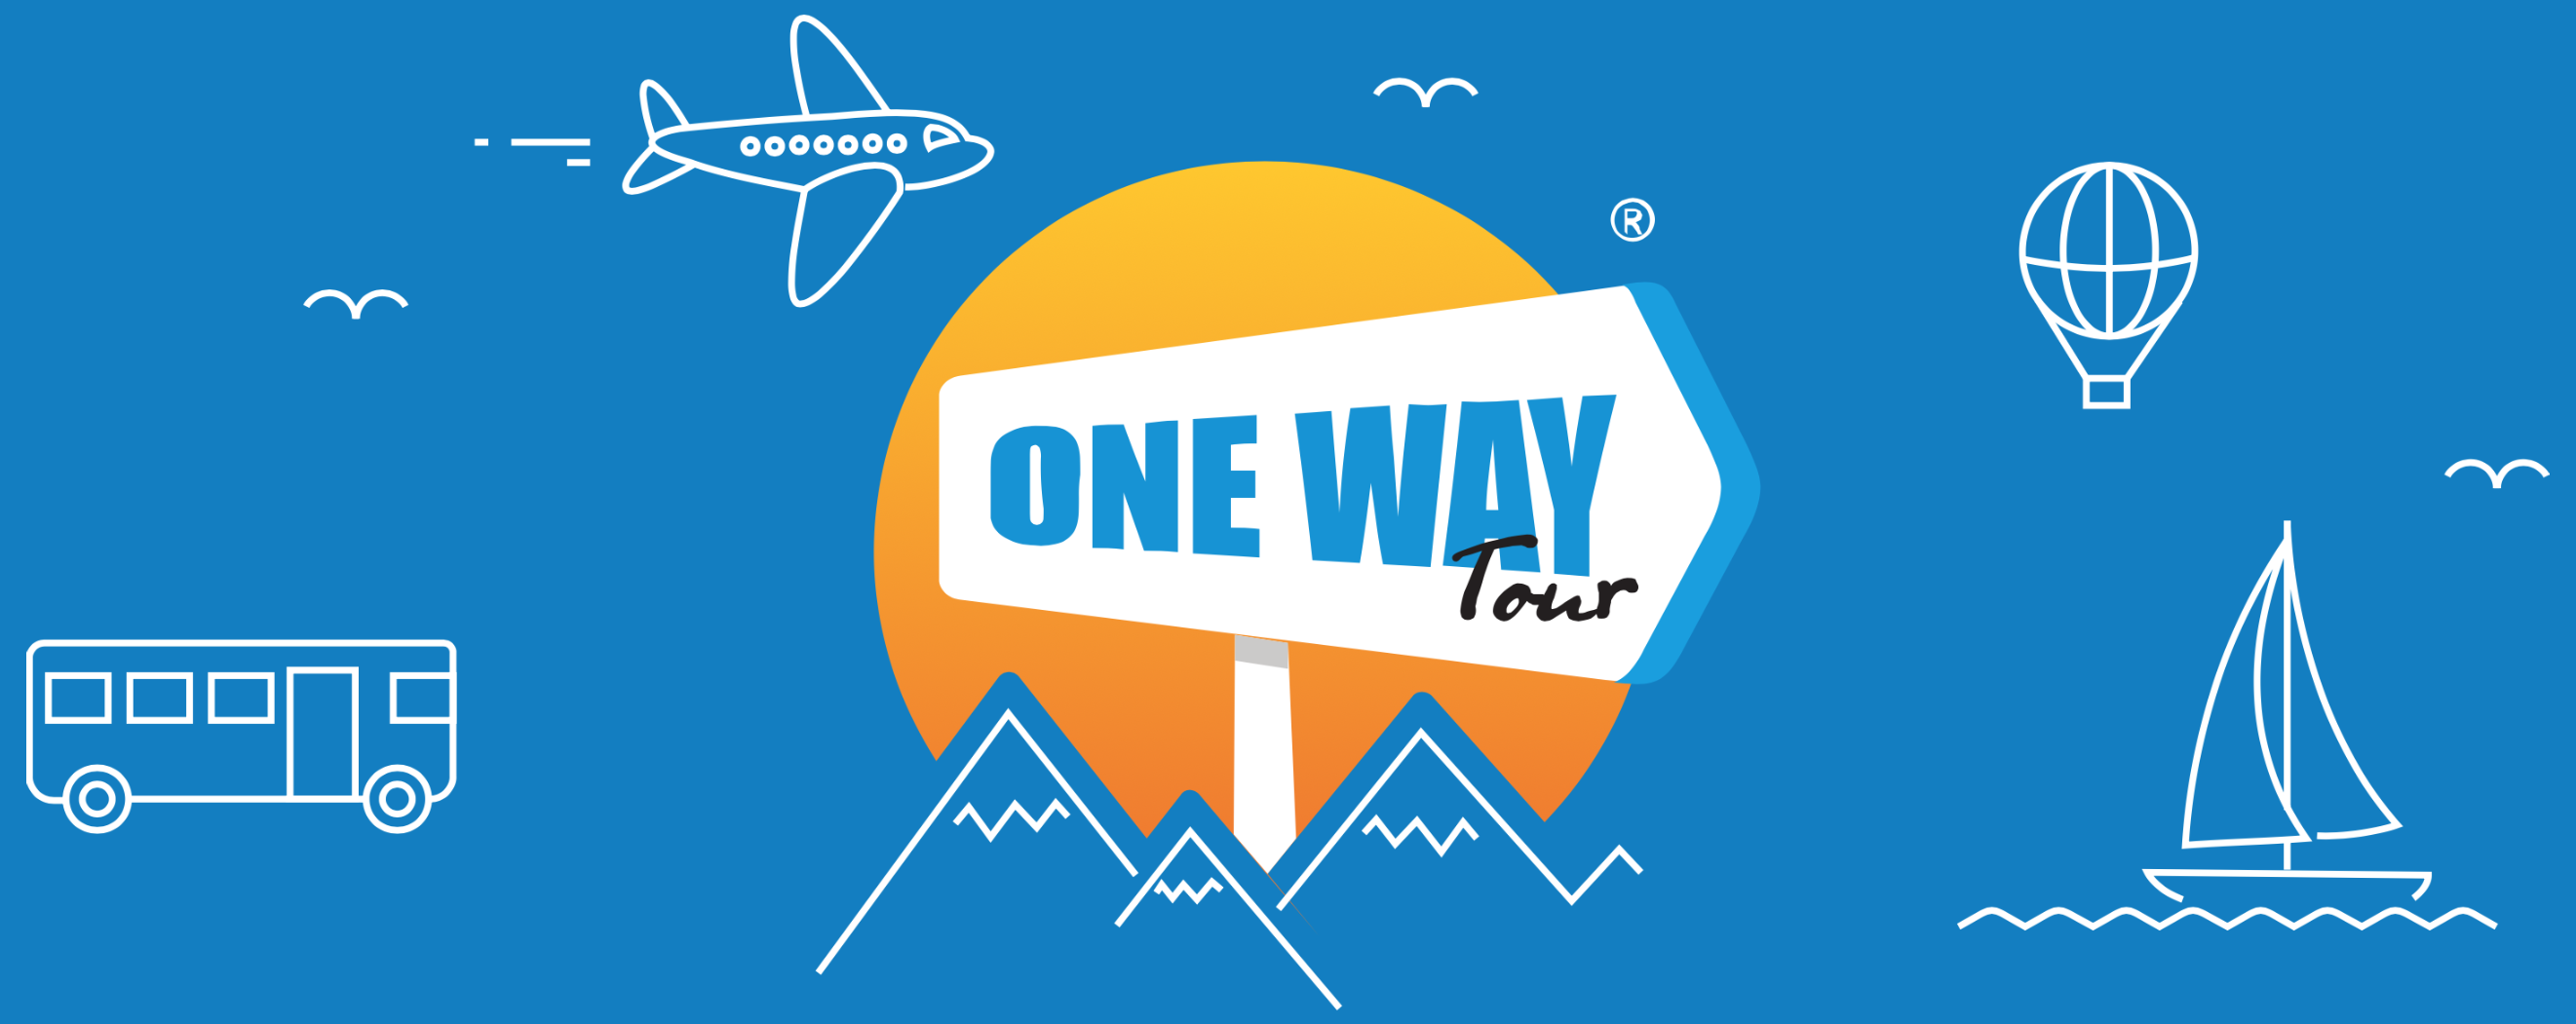 one way travel yerevan